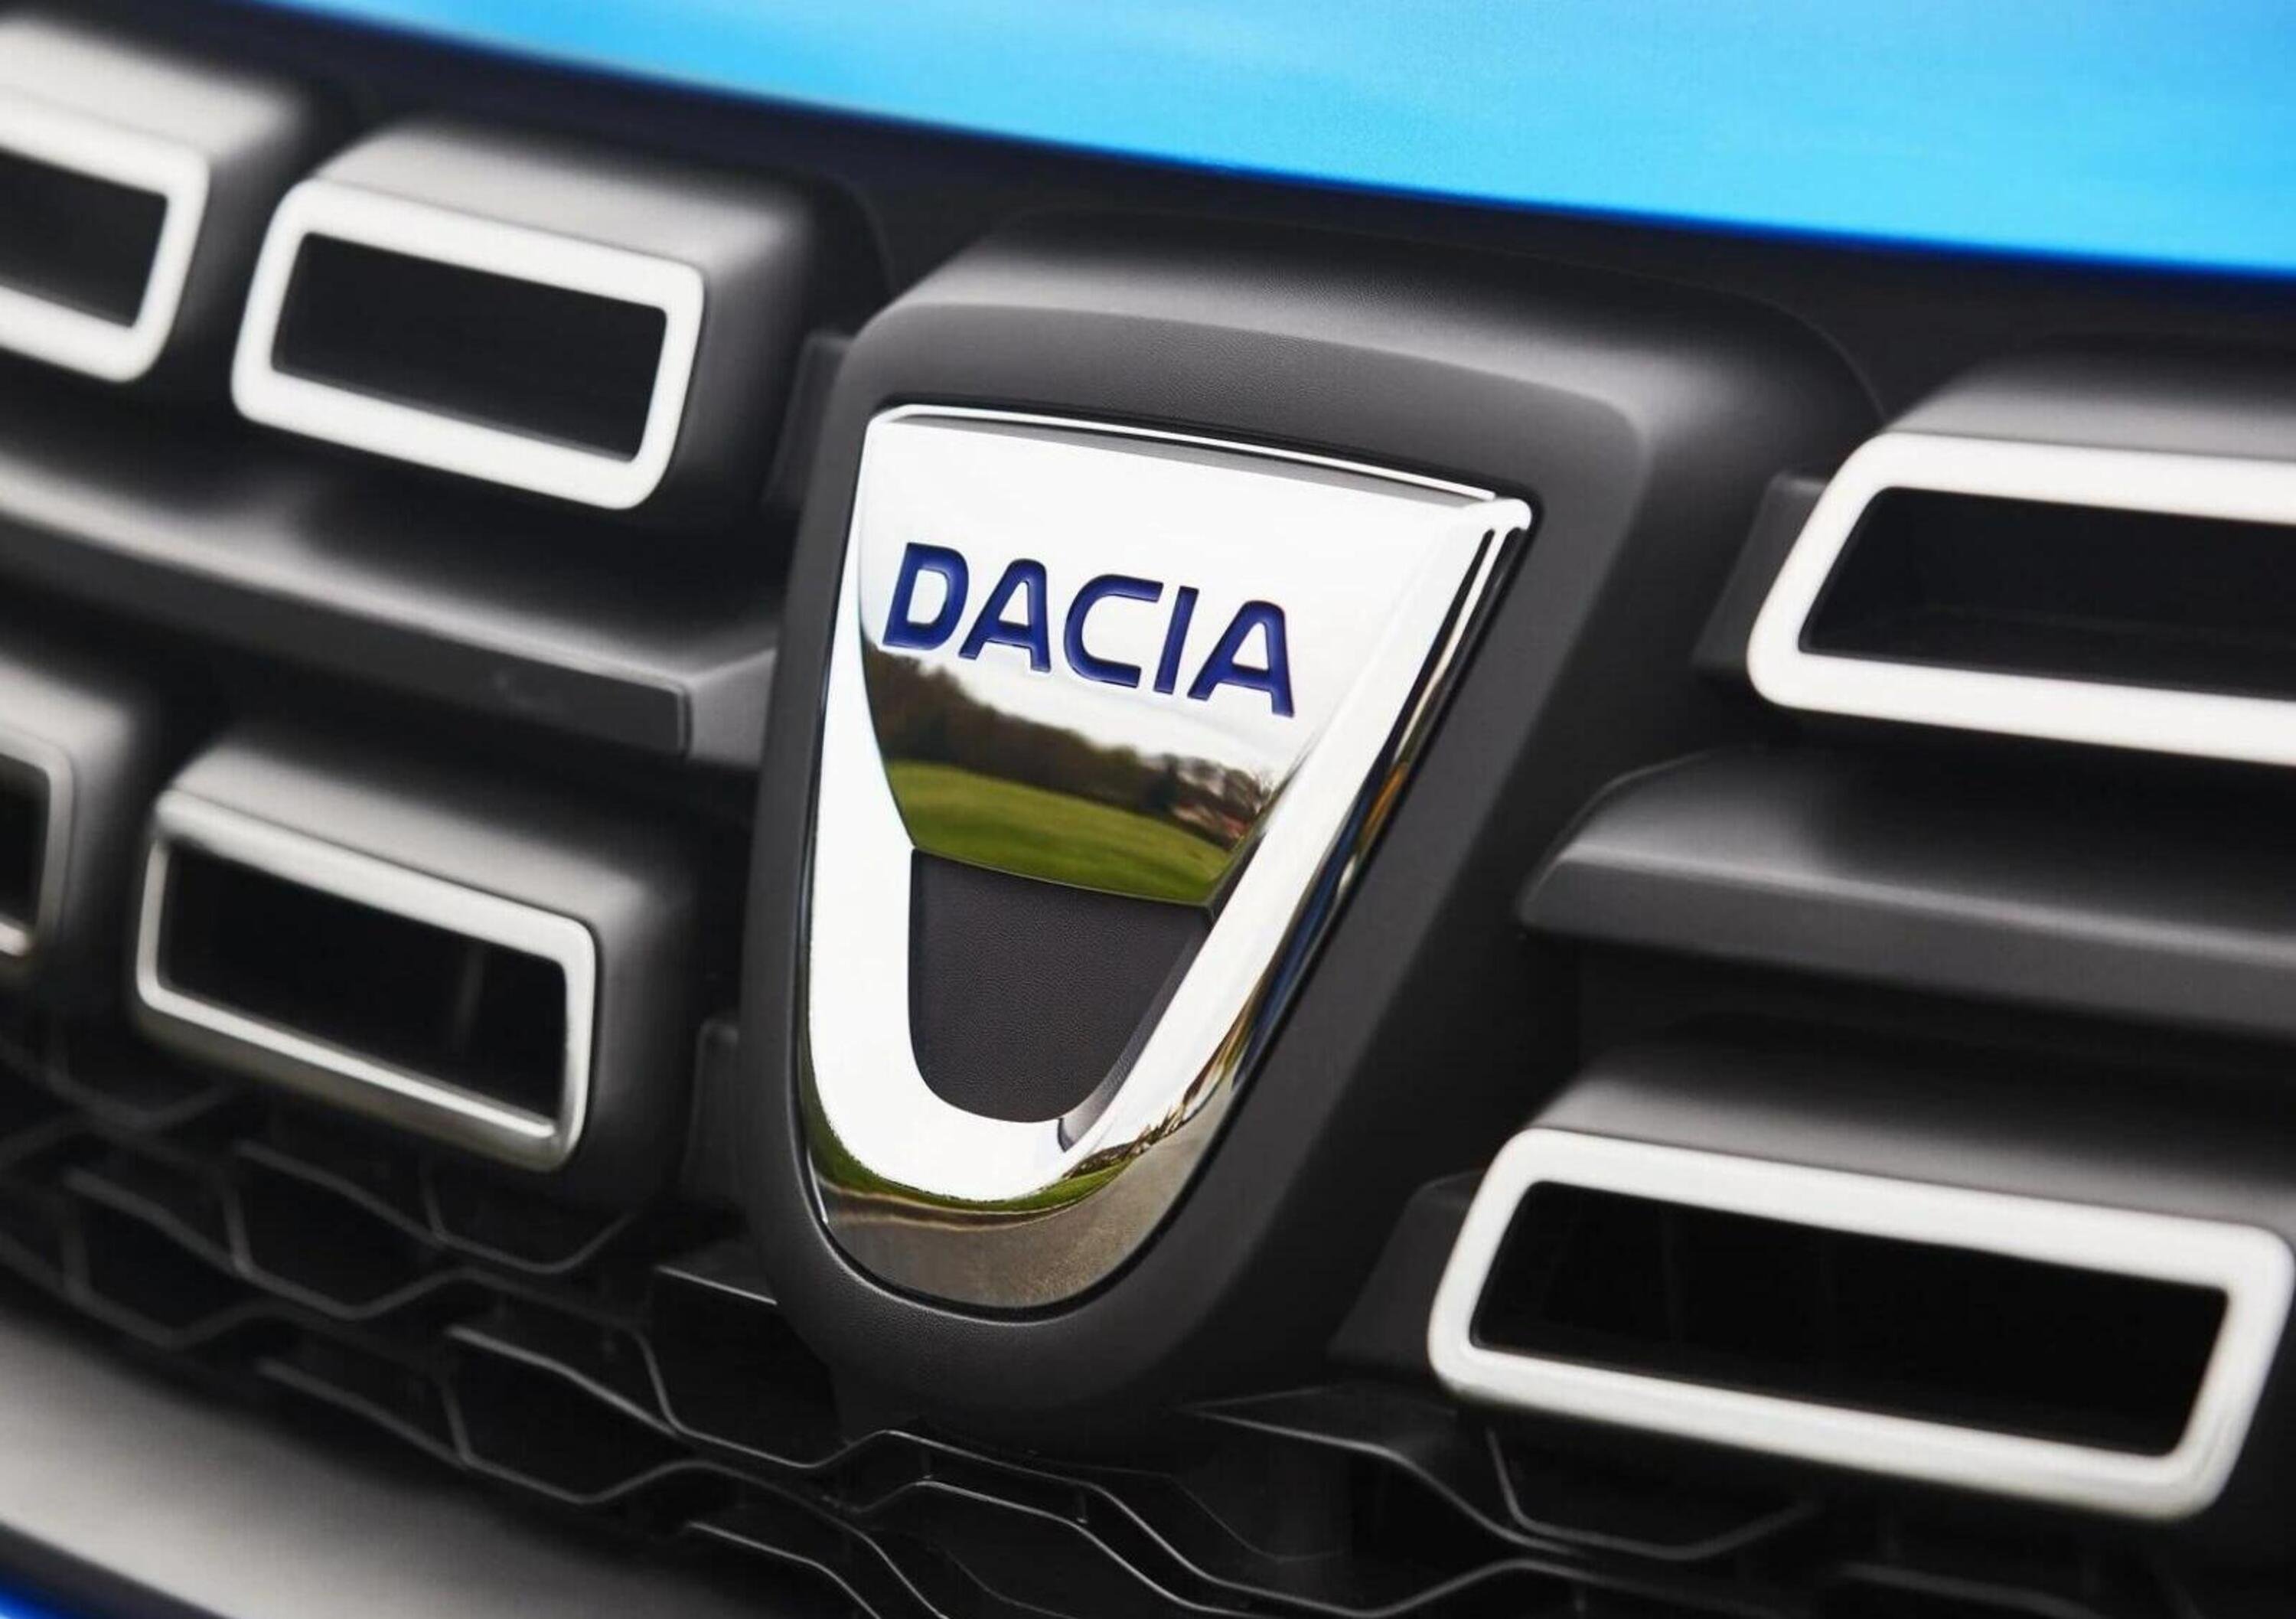 Oggi &egrave; gi&agrave; domani: ecco Dacia Bigster, lo vedremo nel 2025